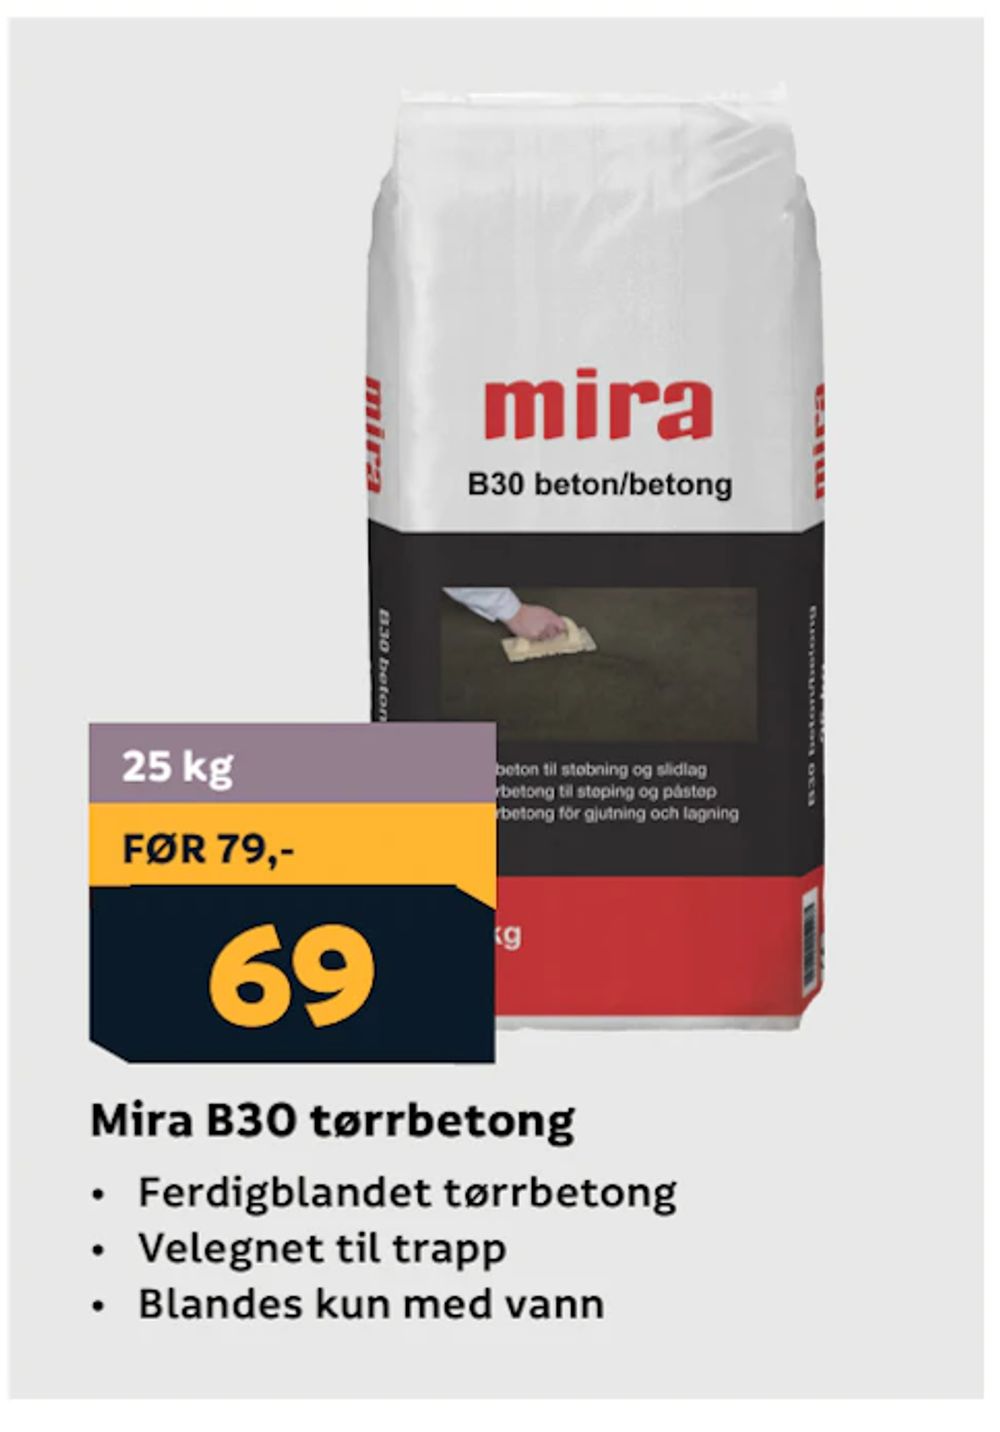 Tilbud på Mira B30 tørrbetong fra Megaflis til 69 kr